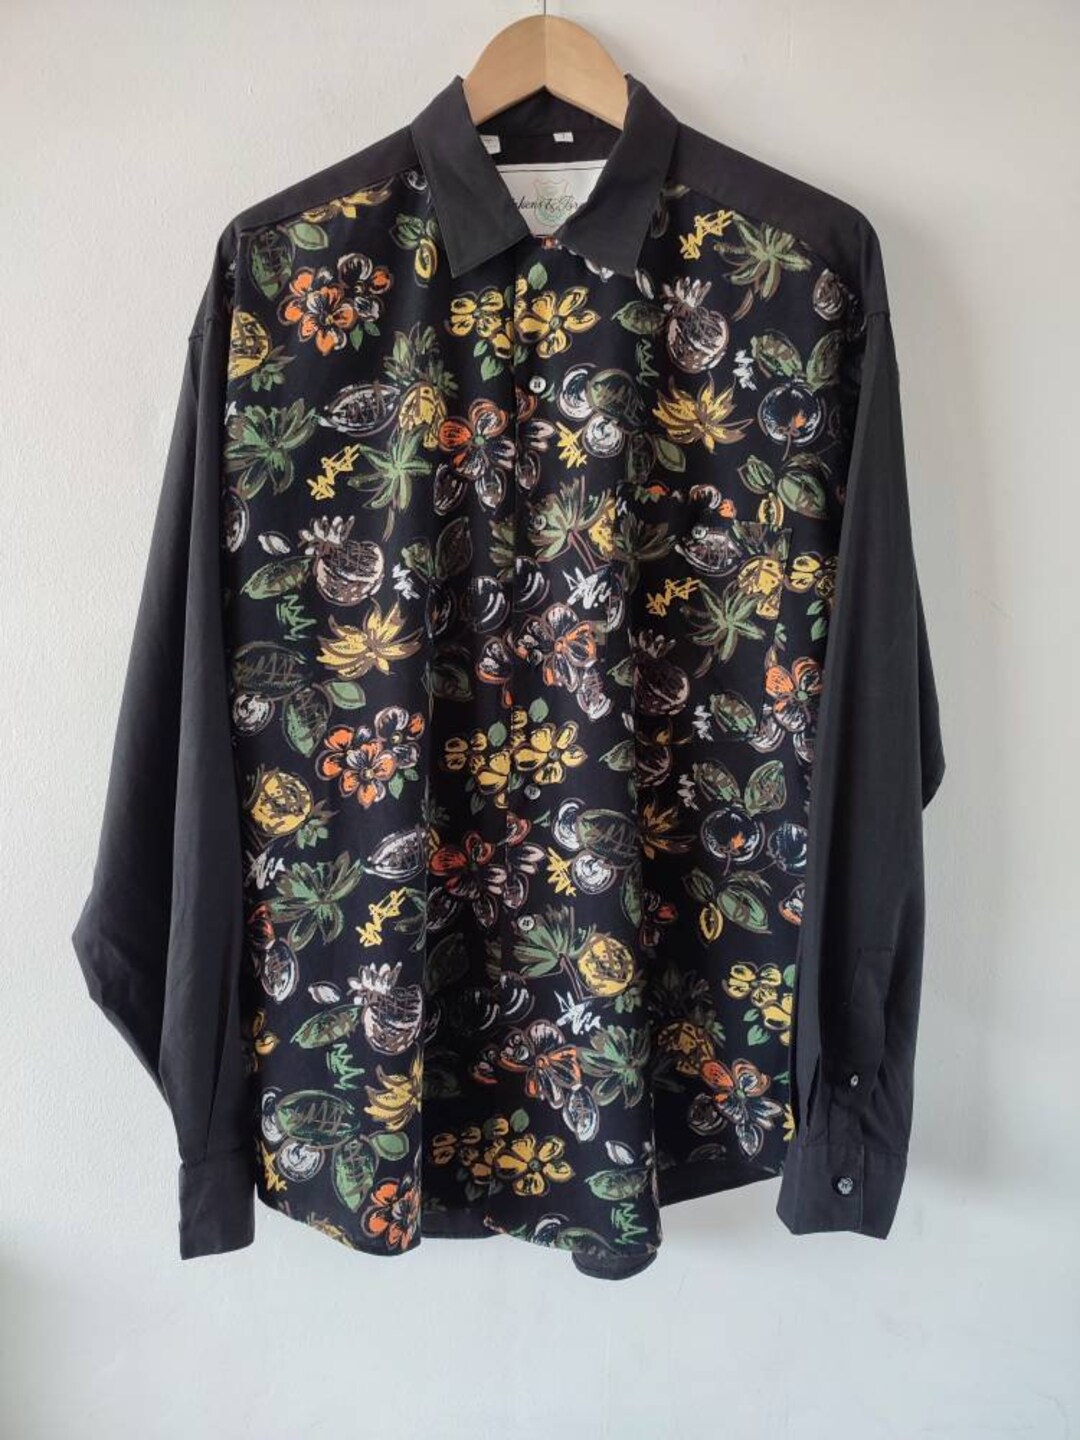 1980s 90s Vintage Black Floral Design Shirt - Etsy